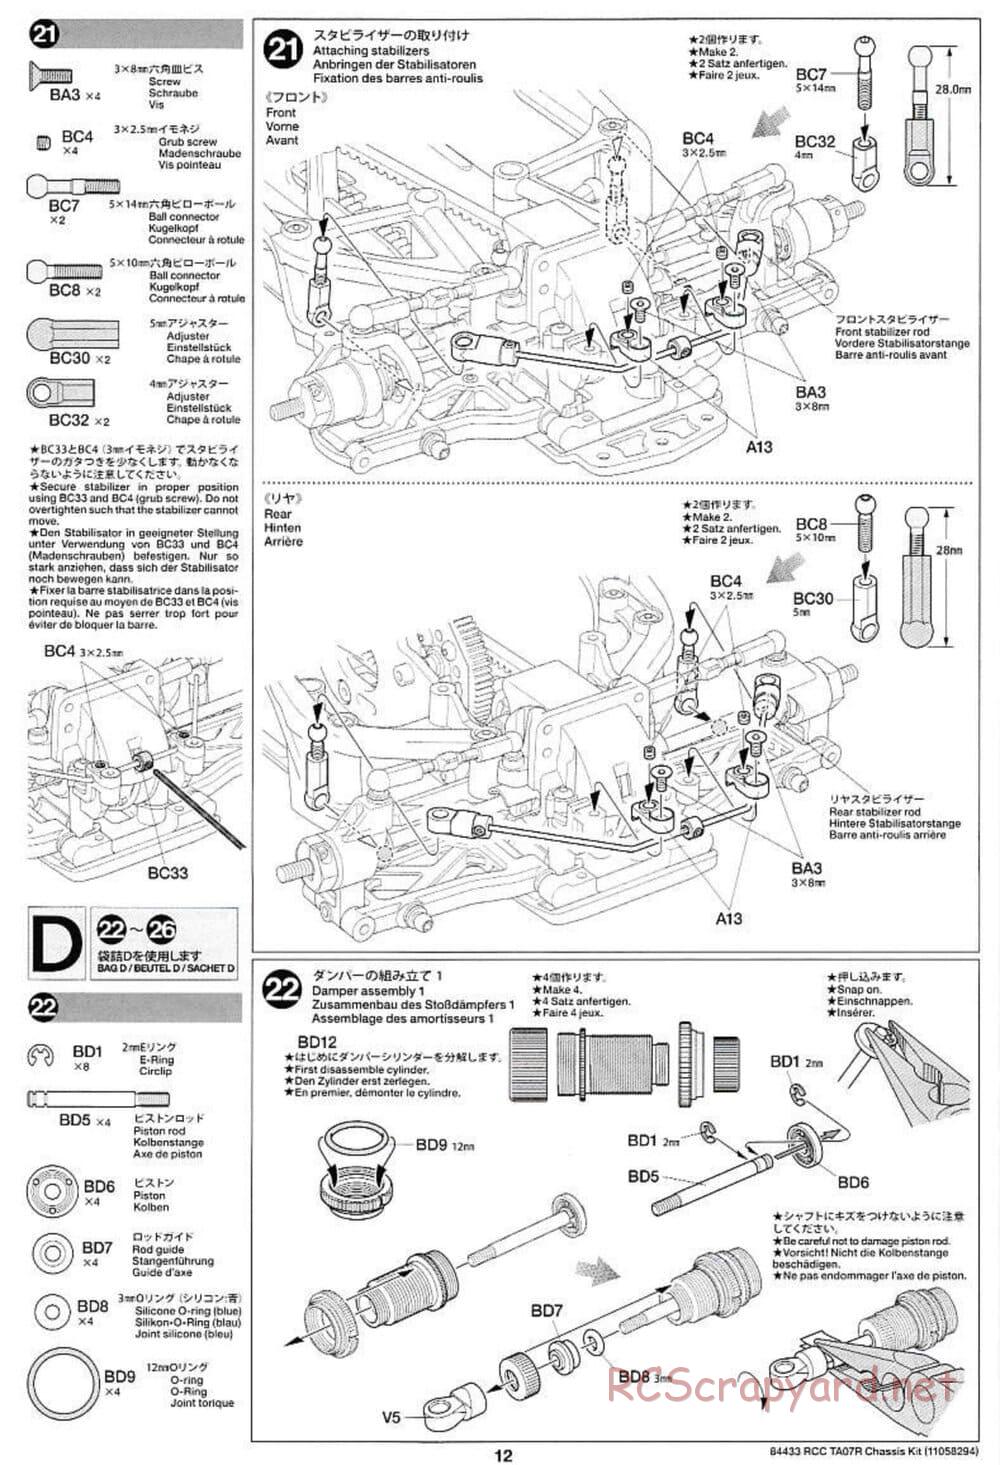 Tamiya - TA07 R Chassis - Manual - Page 12